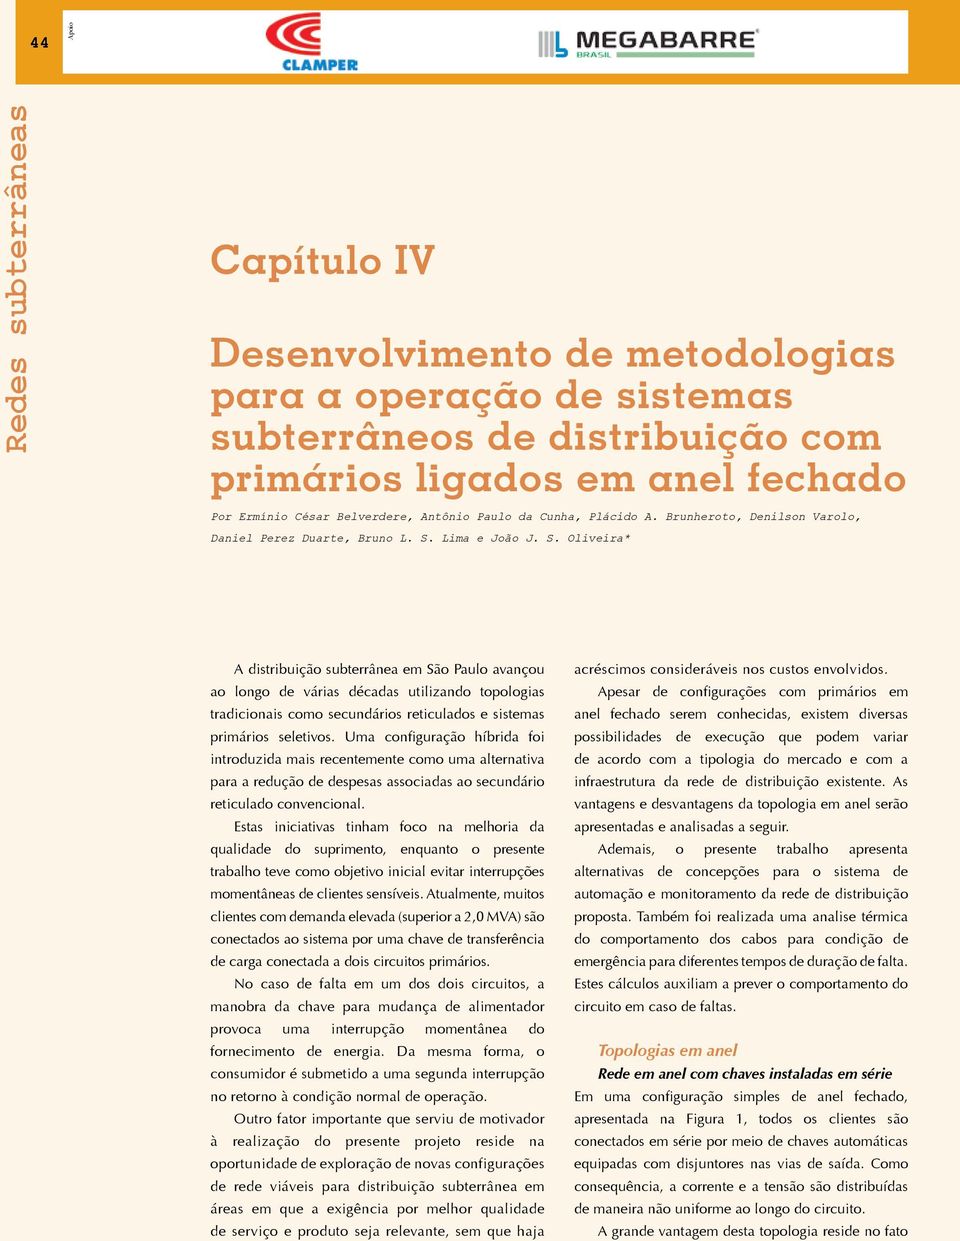 Lima e João J. S. Oliveira* A distribuição subterrânea em São Paulo avançou ao longo de várias décadas utilizando topologias tradicionais como secundários reticulados e sistemas primários seletivos.